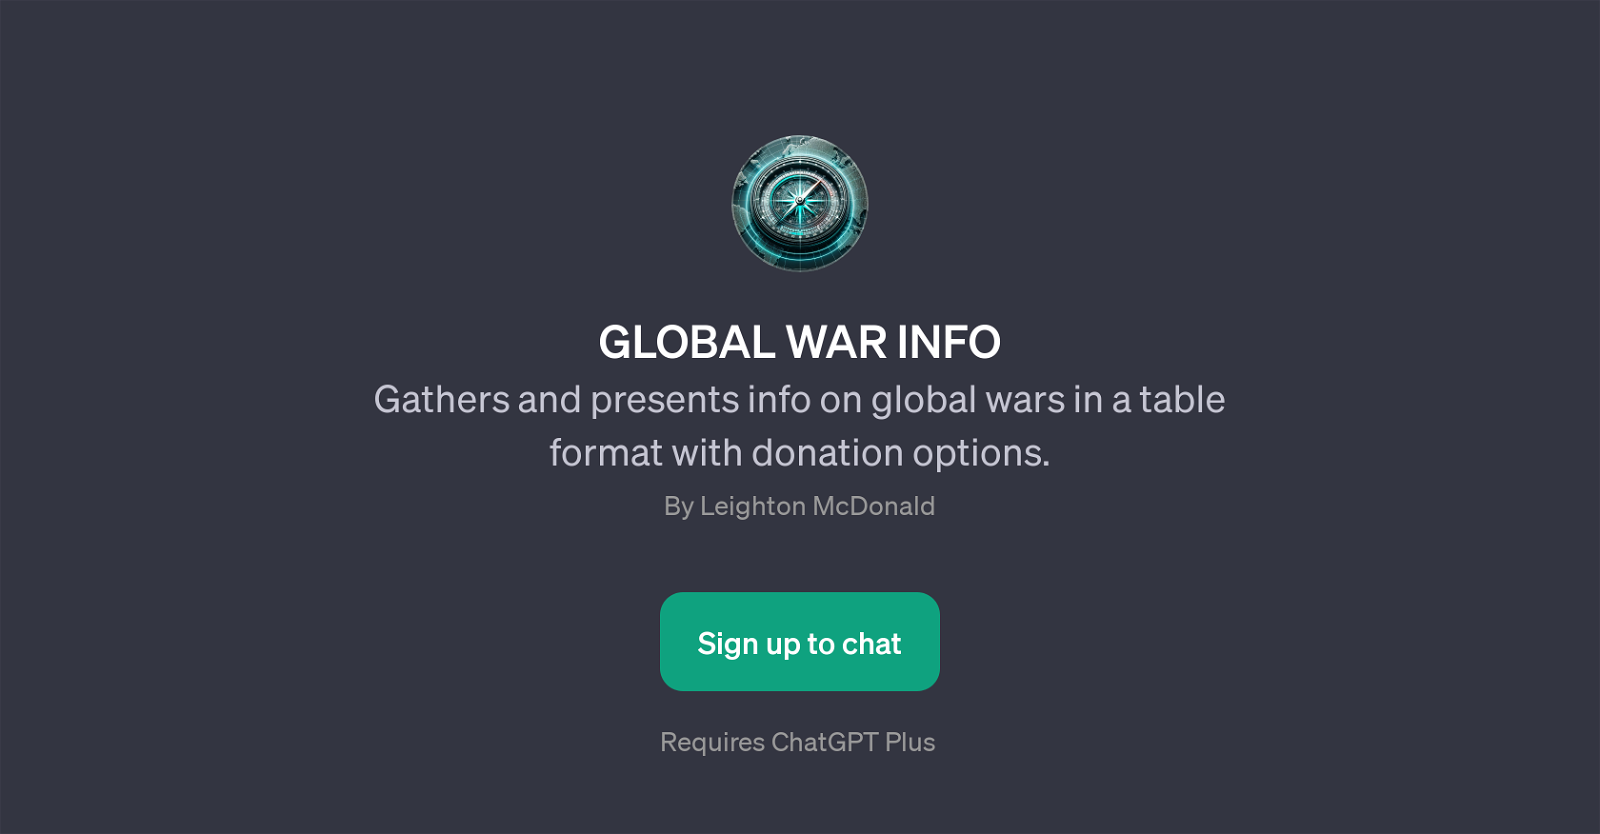 GLOBAL WAR INFO website